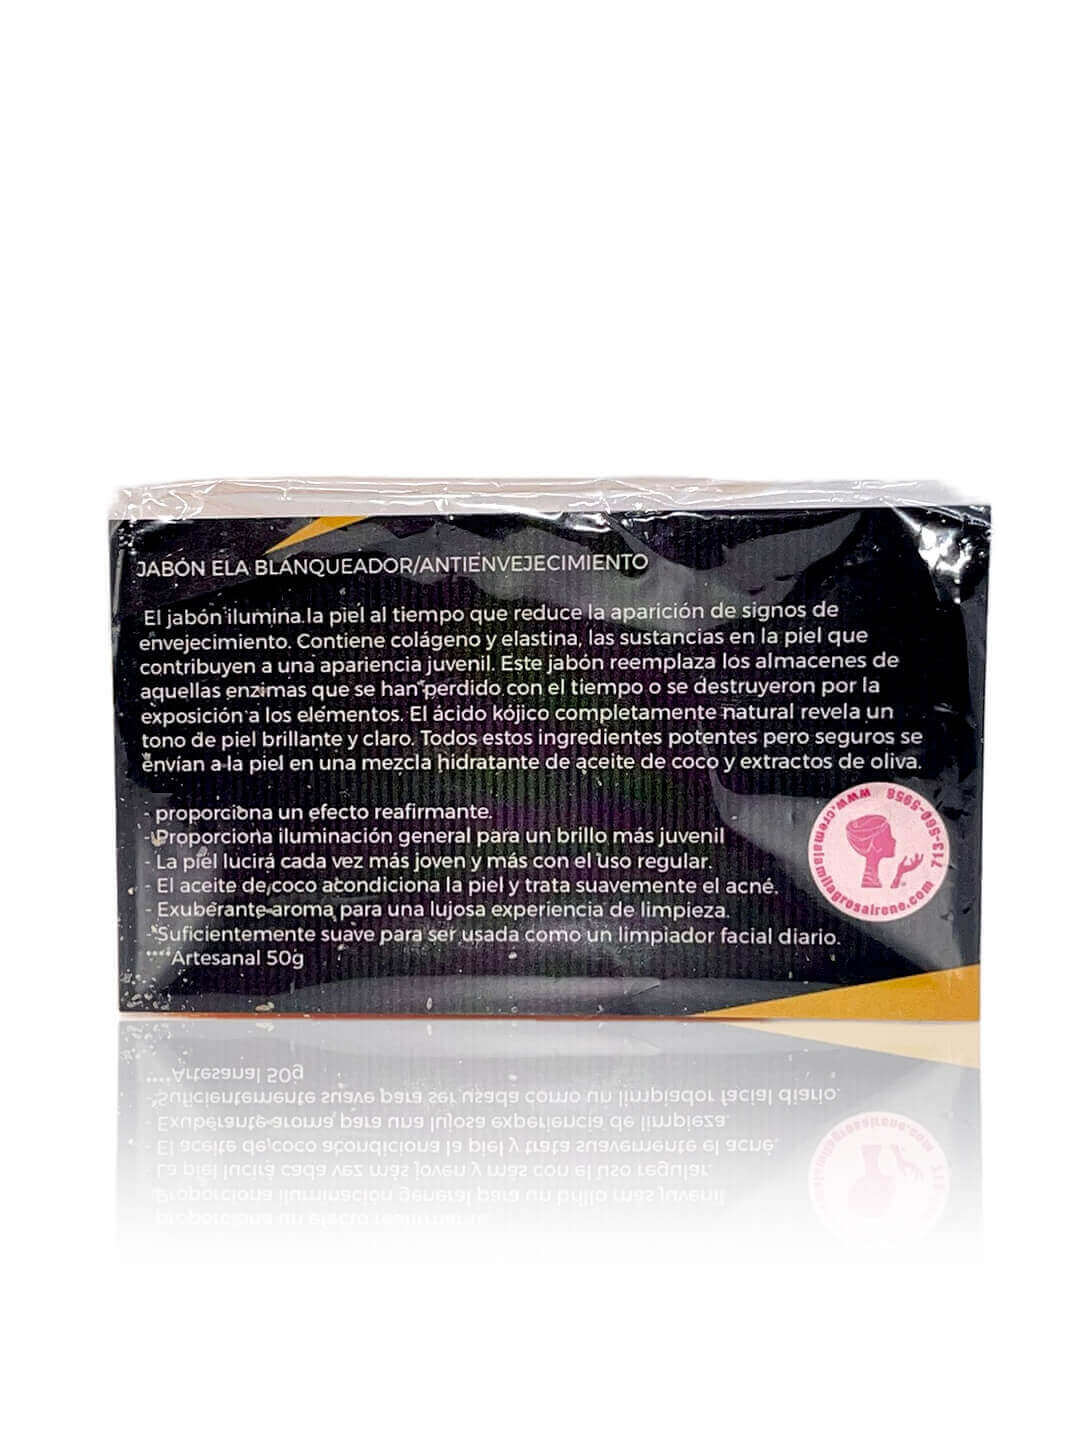 Jabón facial ELA Blanqueador/Antienvejecimiento - Facial soap WHITENING / ANTI AGING SOAP